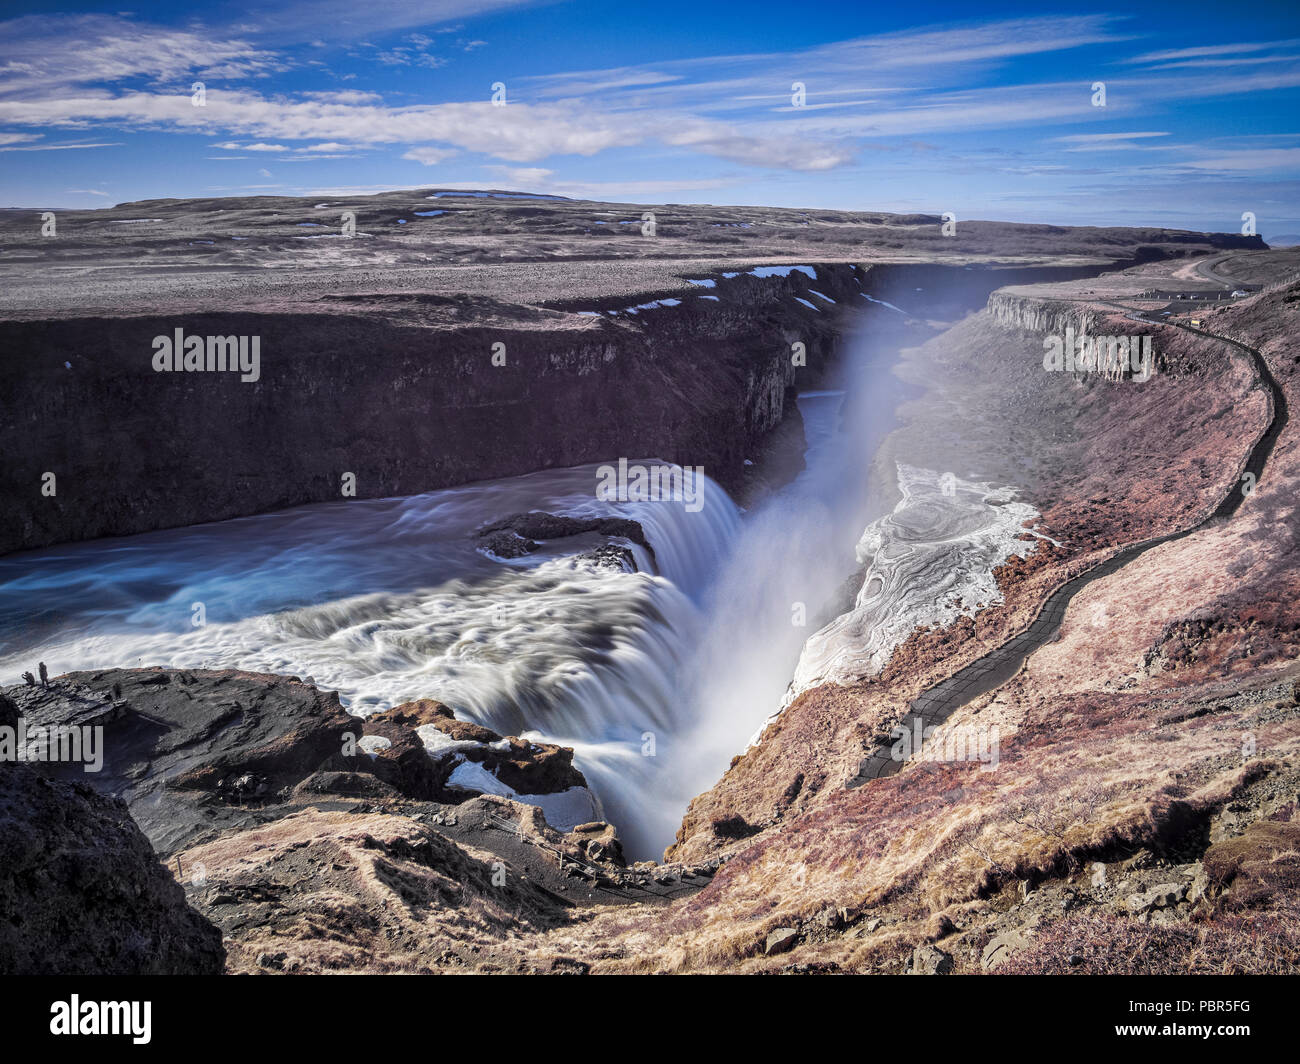 Gullfoss cascata nel sud dell'Islanda. Questa è una delle principali attrazioni il Golden Circle itinerario turistico. Foto Stock